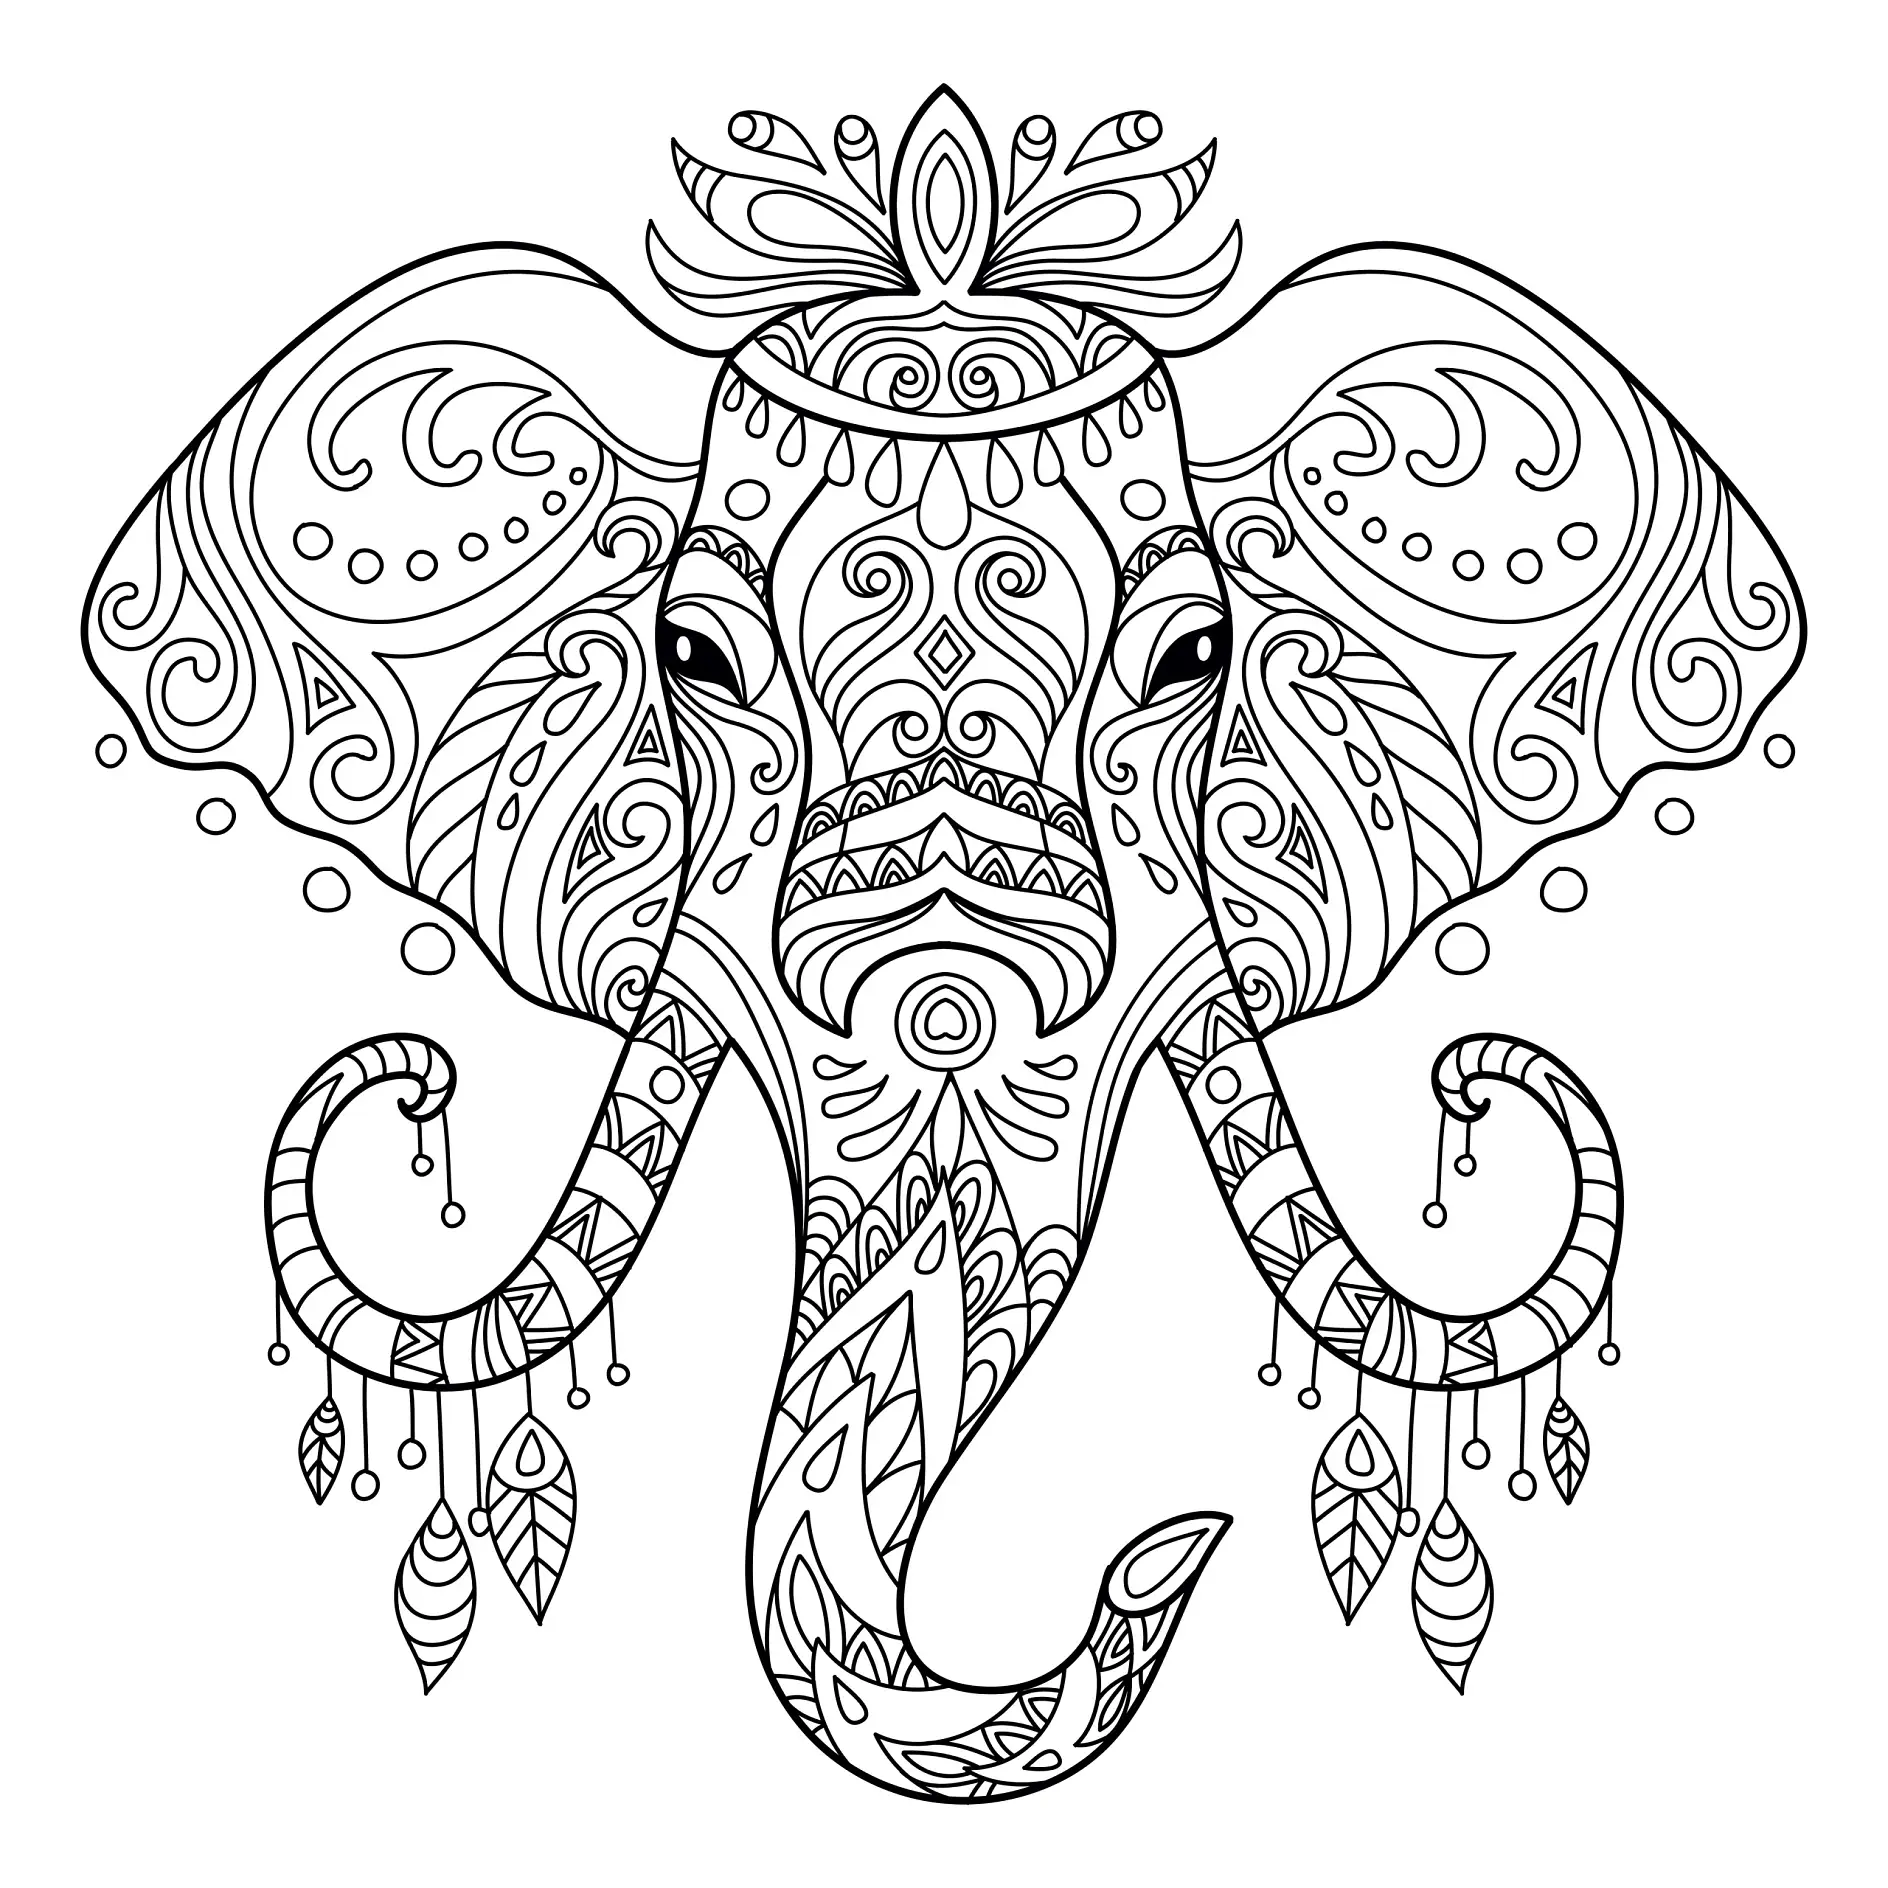 Ausmalbild Mandala Elefant mit detaillierten Ornamenten und hängenden Verzierungen